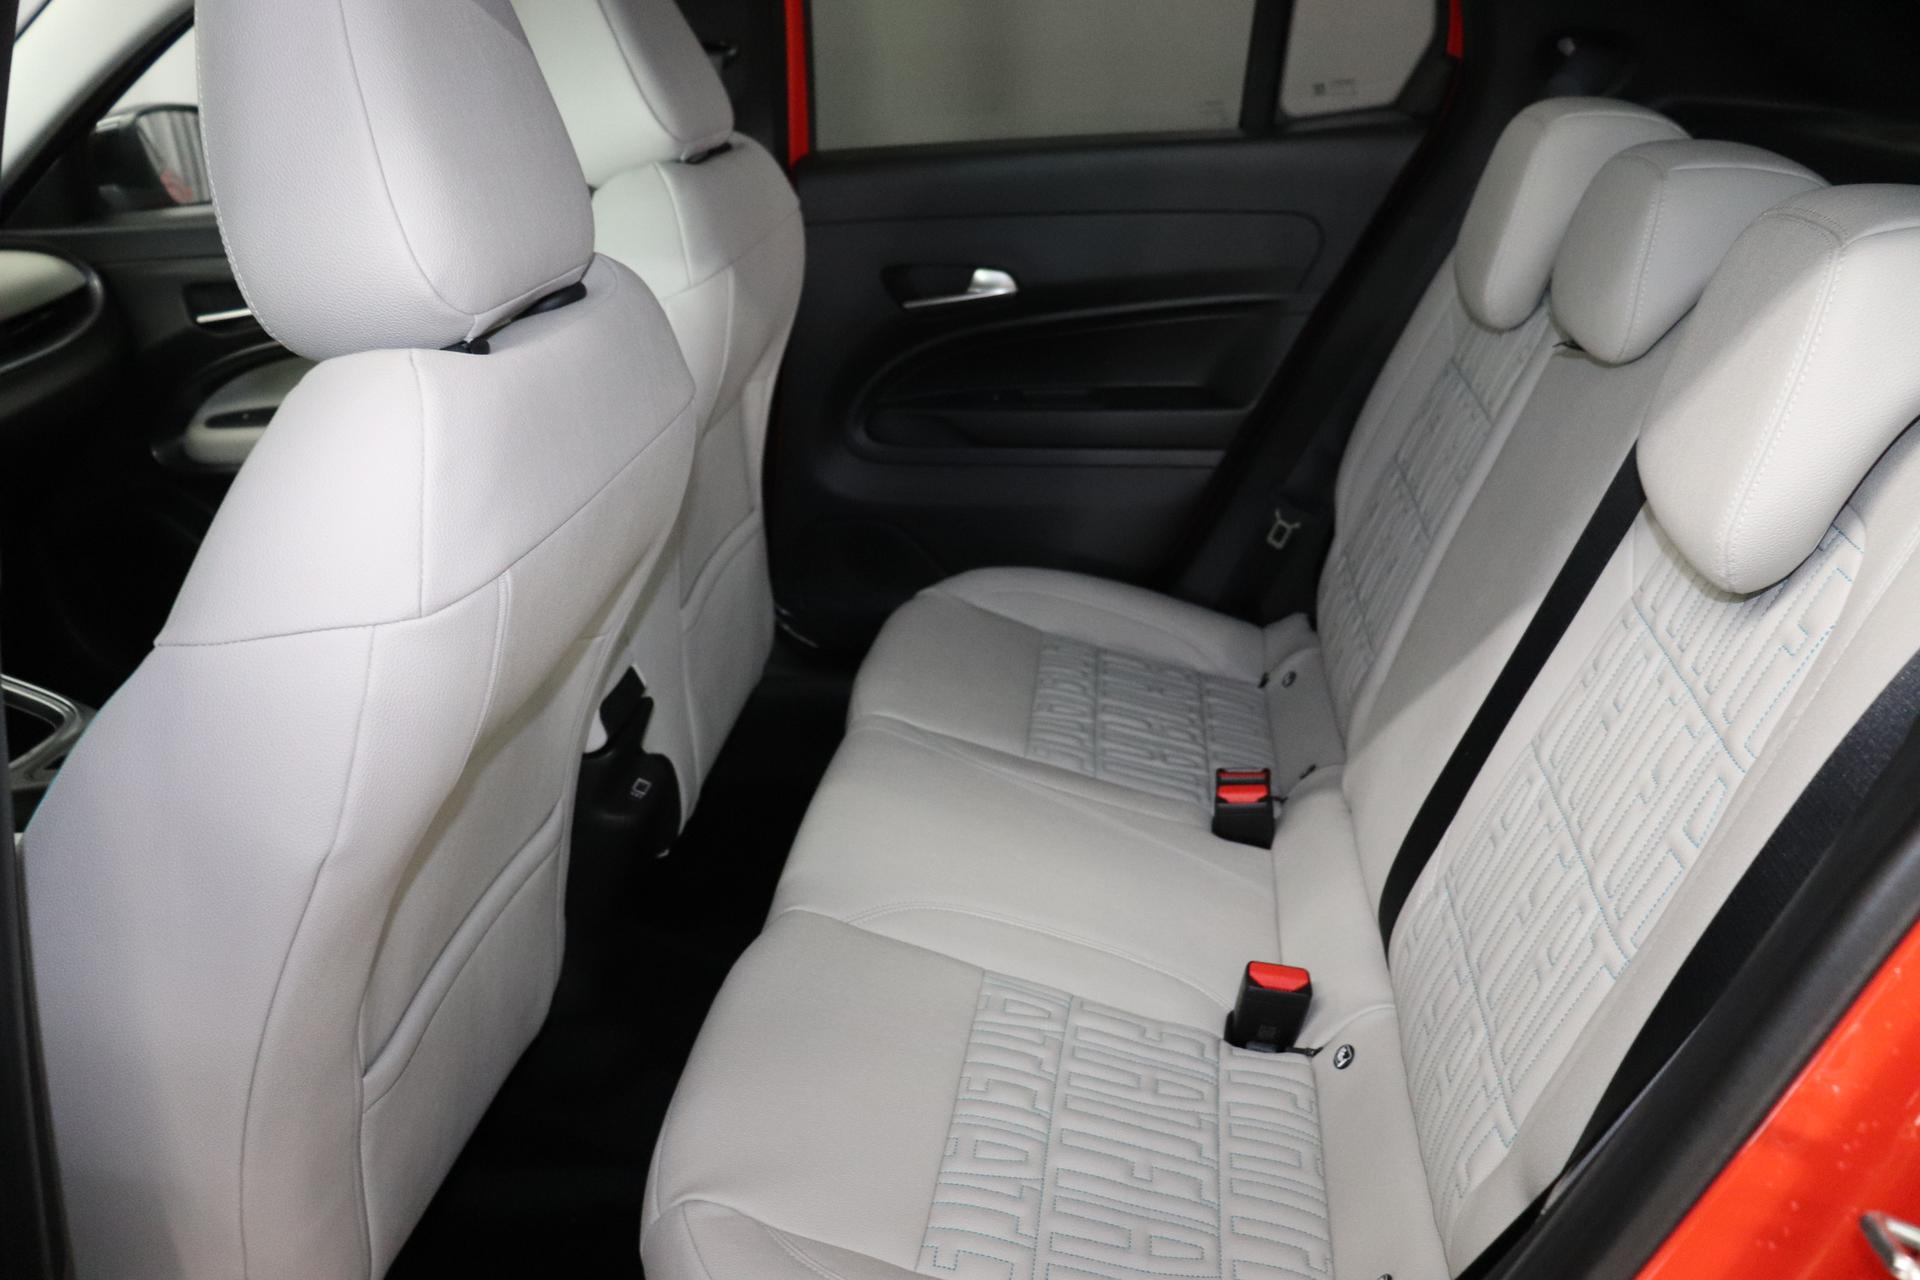 Fiat 600e RED 54kWh 115kW, Klimaautomatik, Ambiente Licht inkl. Color  Therapy, 10,25 Infotainment, AppleCarPlay&Android Auto, Parksensoren  hinten, Spurhalteassistent, LED Scheinwerfer, Nebelscheinwerfer, 16  Stahlfelgen, uvm. Reimport EU-Neuwagen